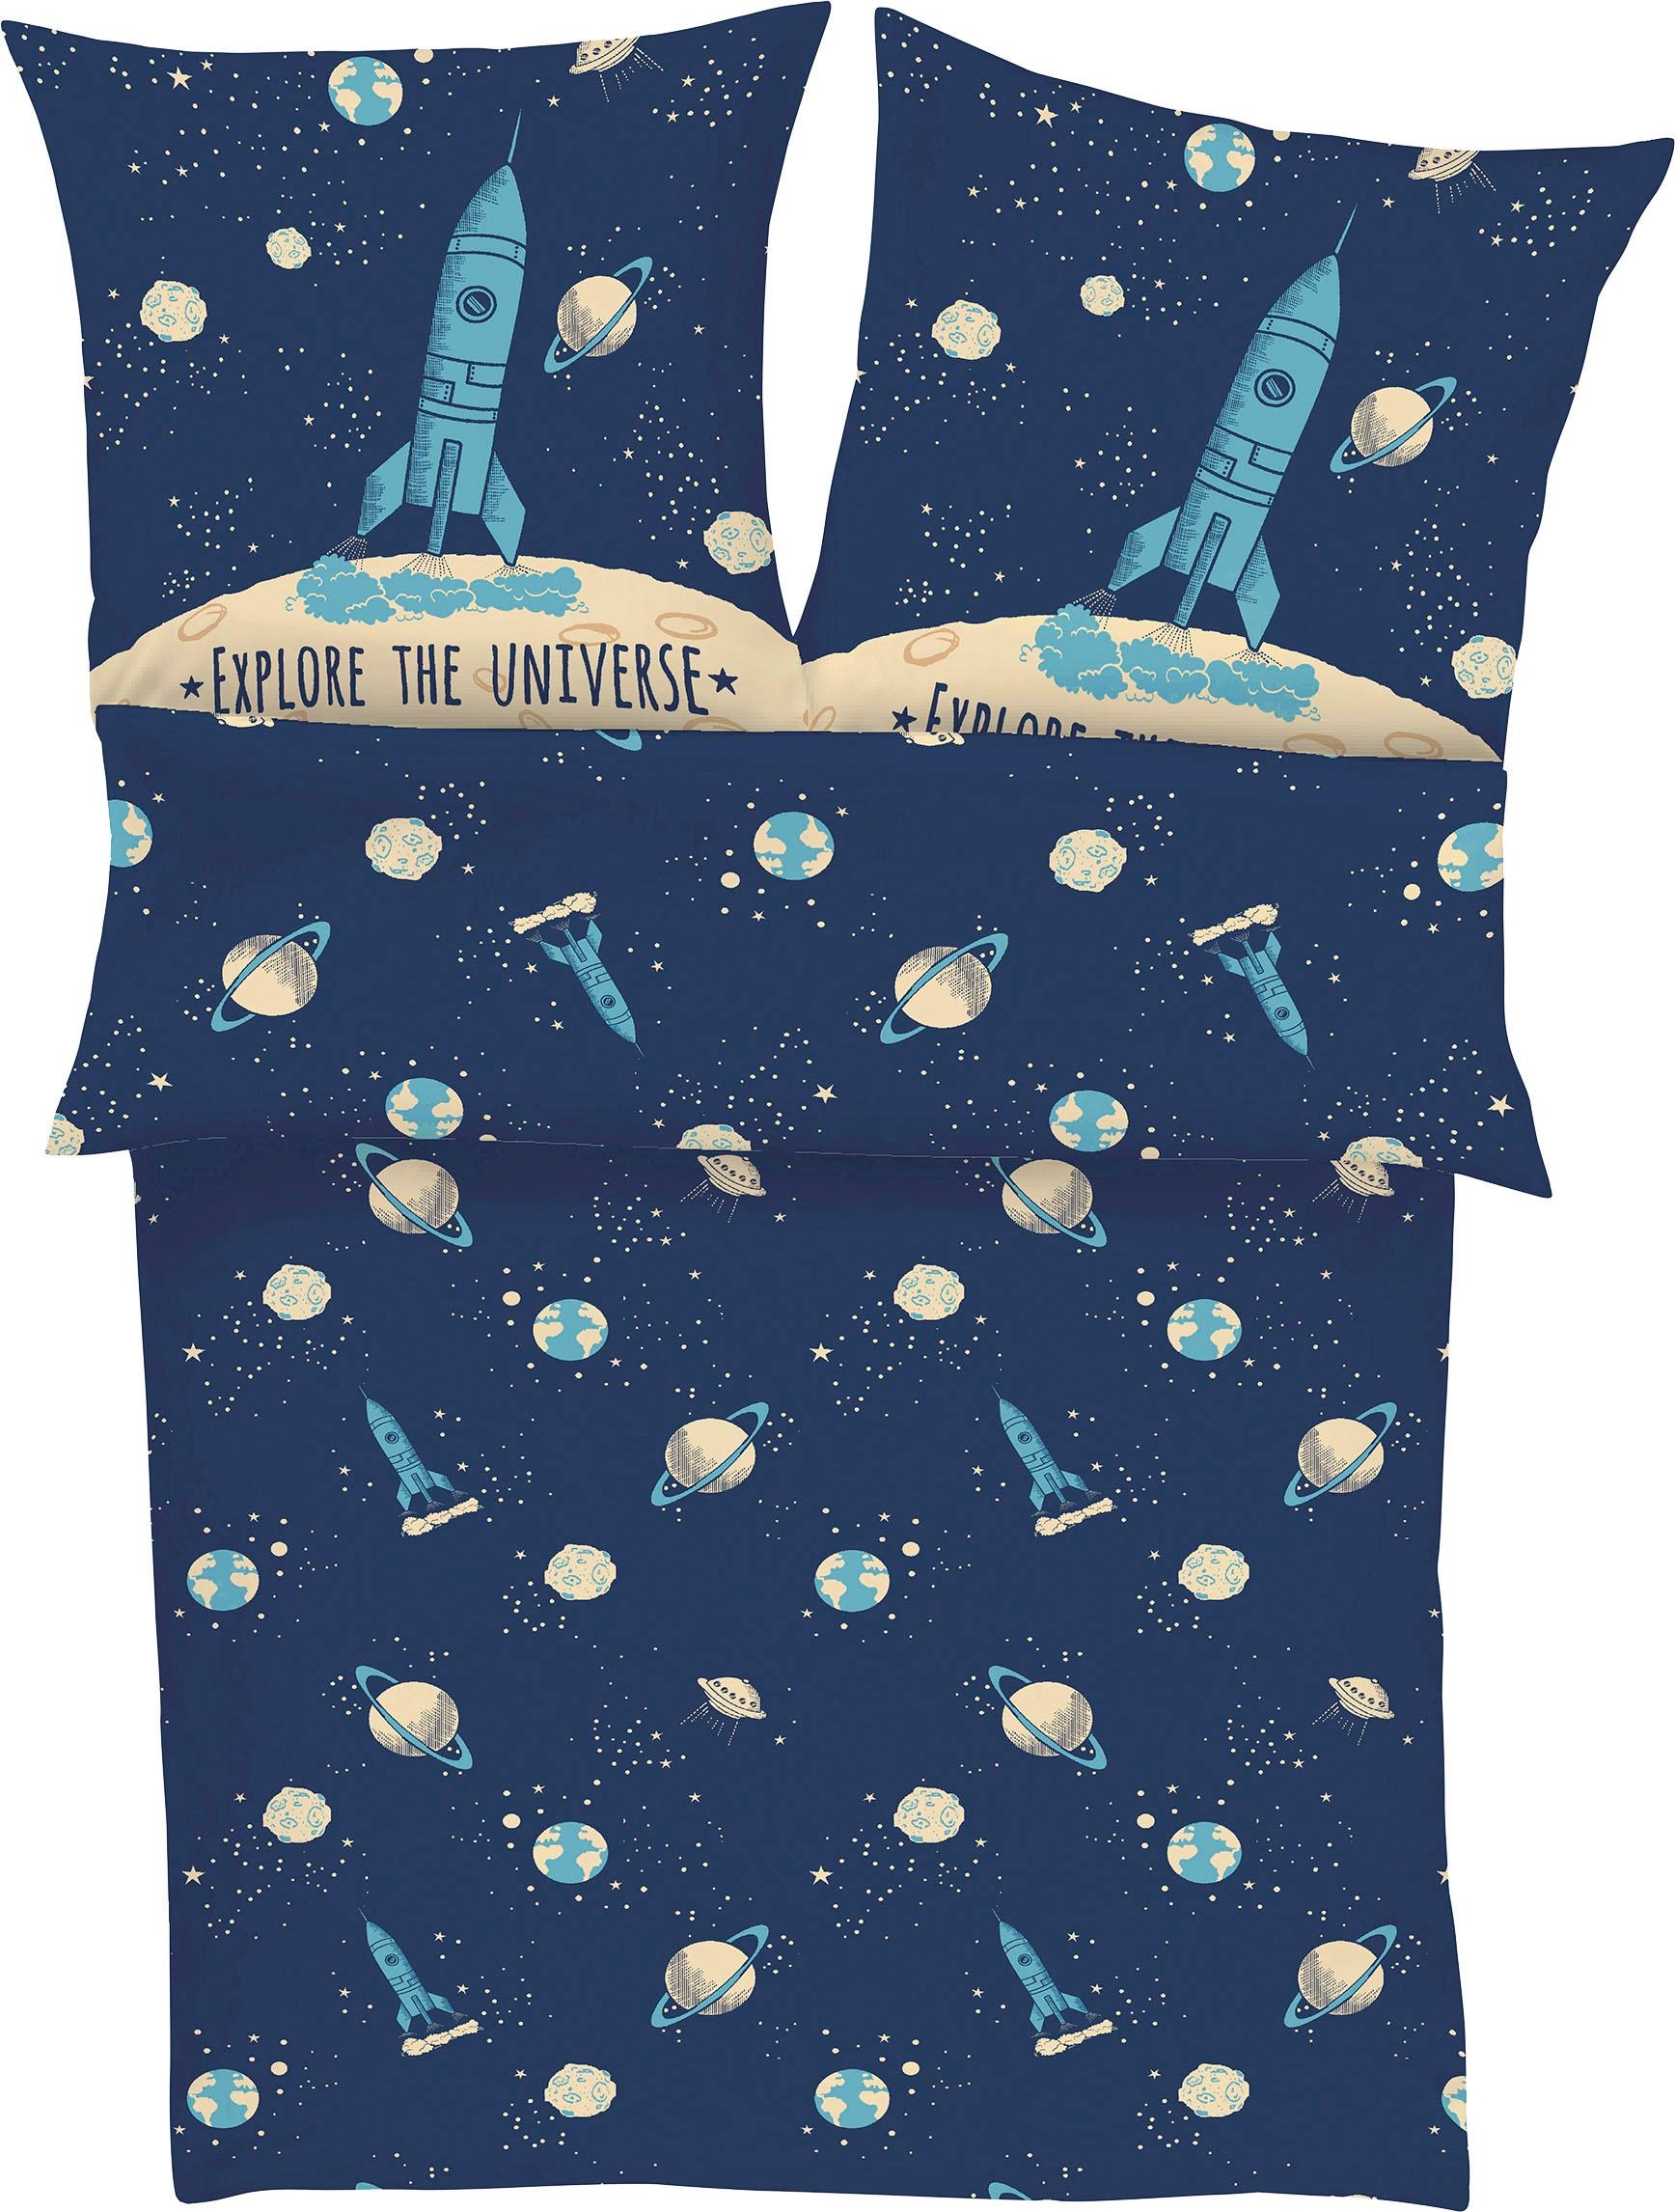 s.Oliver Junior Kinderbettwäsche »Explore the Universe«, (2 tlg.), mit Weltraum Motiv, 100% Baumwolle, mit Reißverschluss